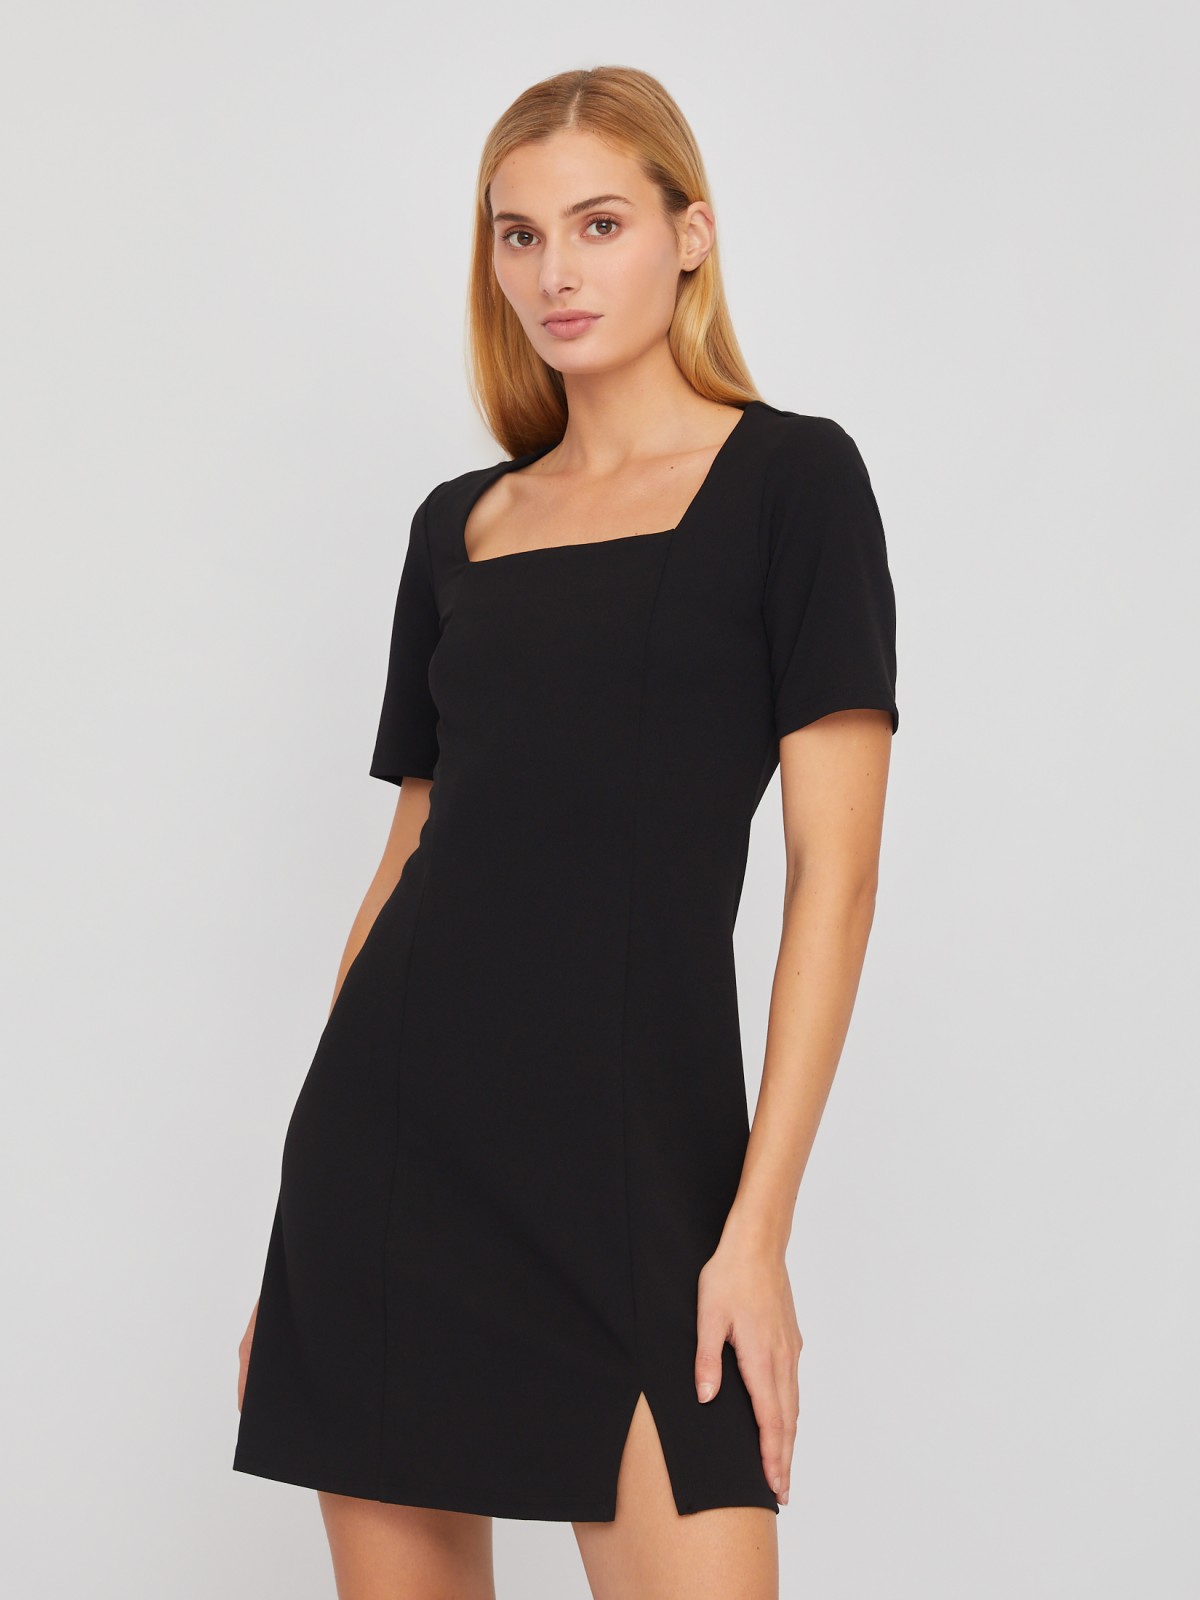 Платье длины мини с вырезом и коротким рукавом zolla 02411819F331, цвет черный, размер XS - фото 4